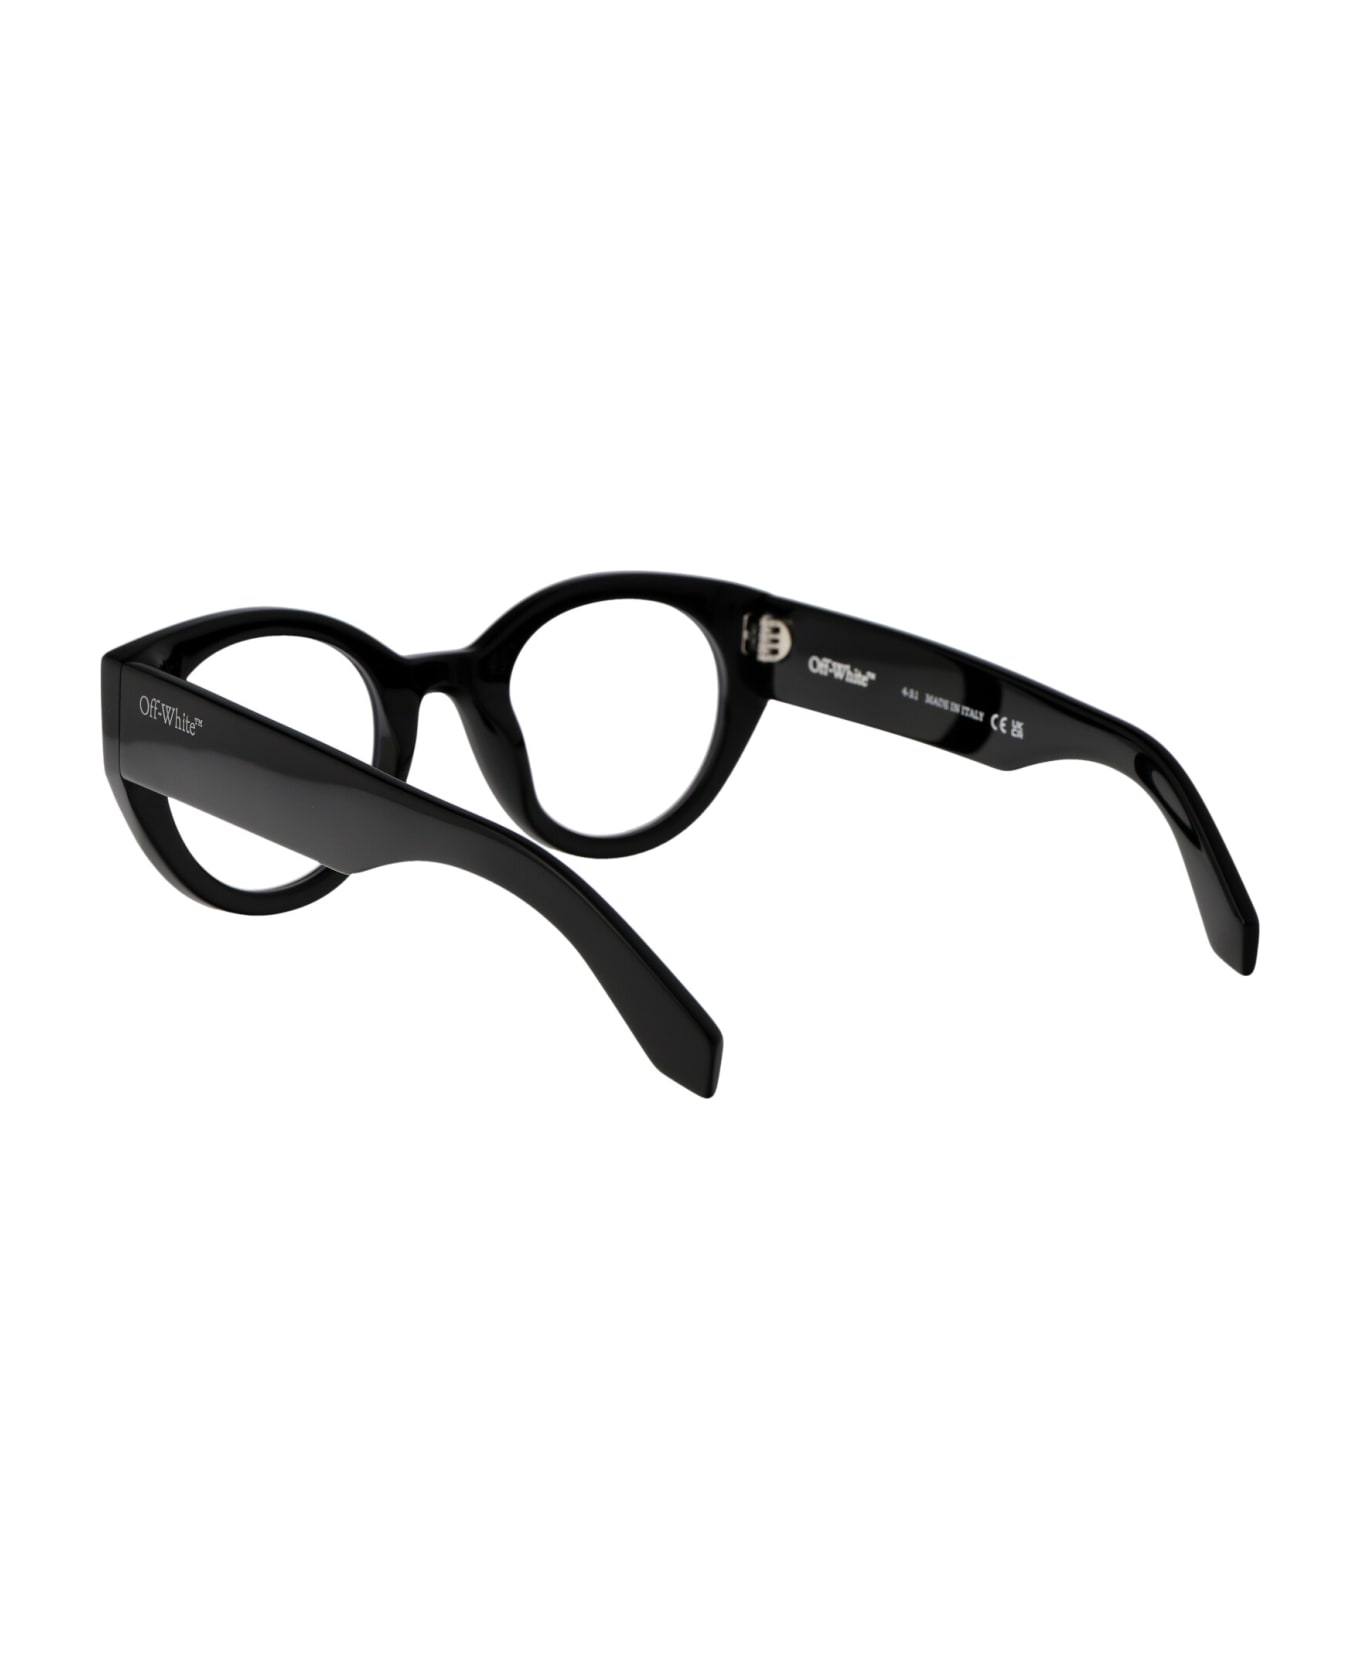 Off-White Optical Style 41 Glasses - 1000 BLACK アイウェア